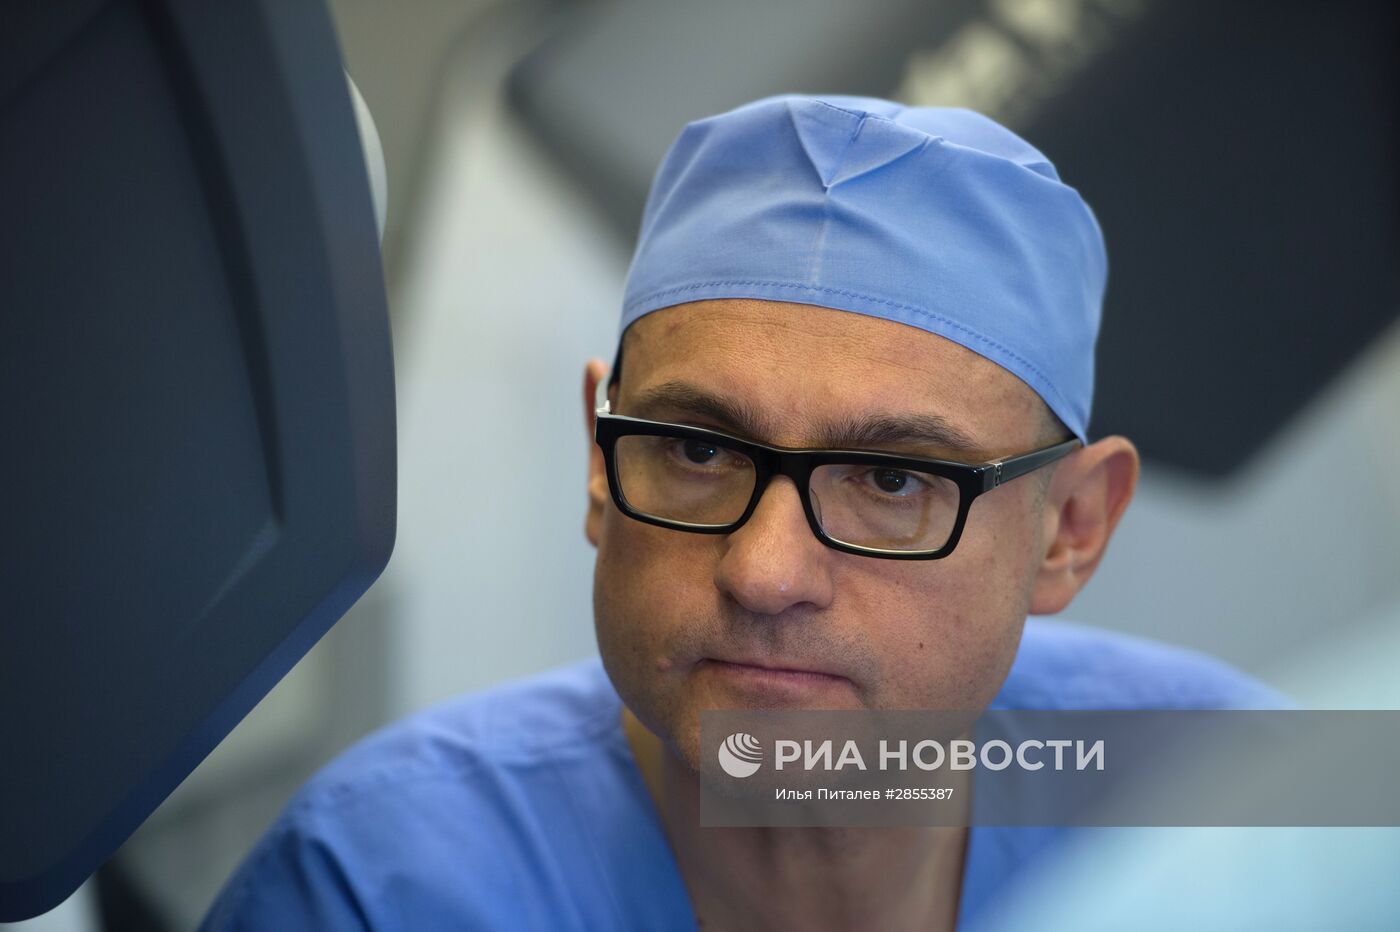 Онкологическая операция с применением робота-хирурга "Да Винчи"